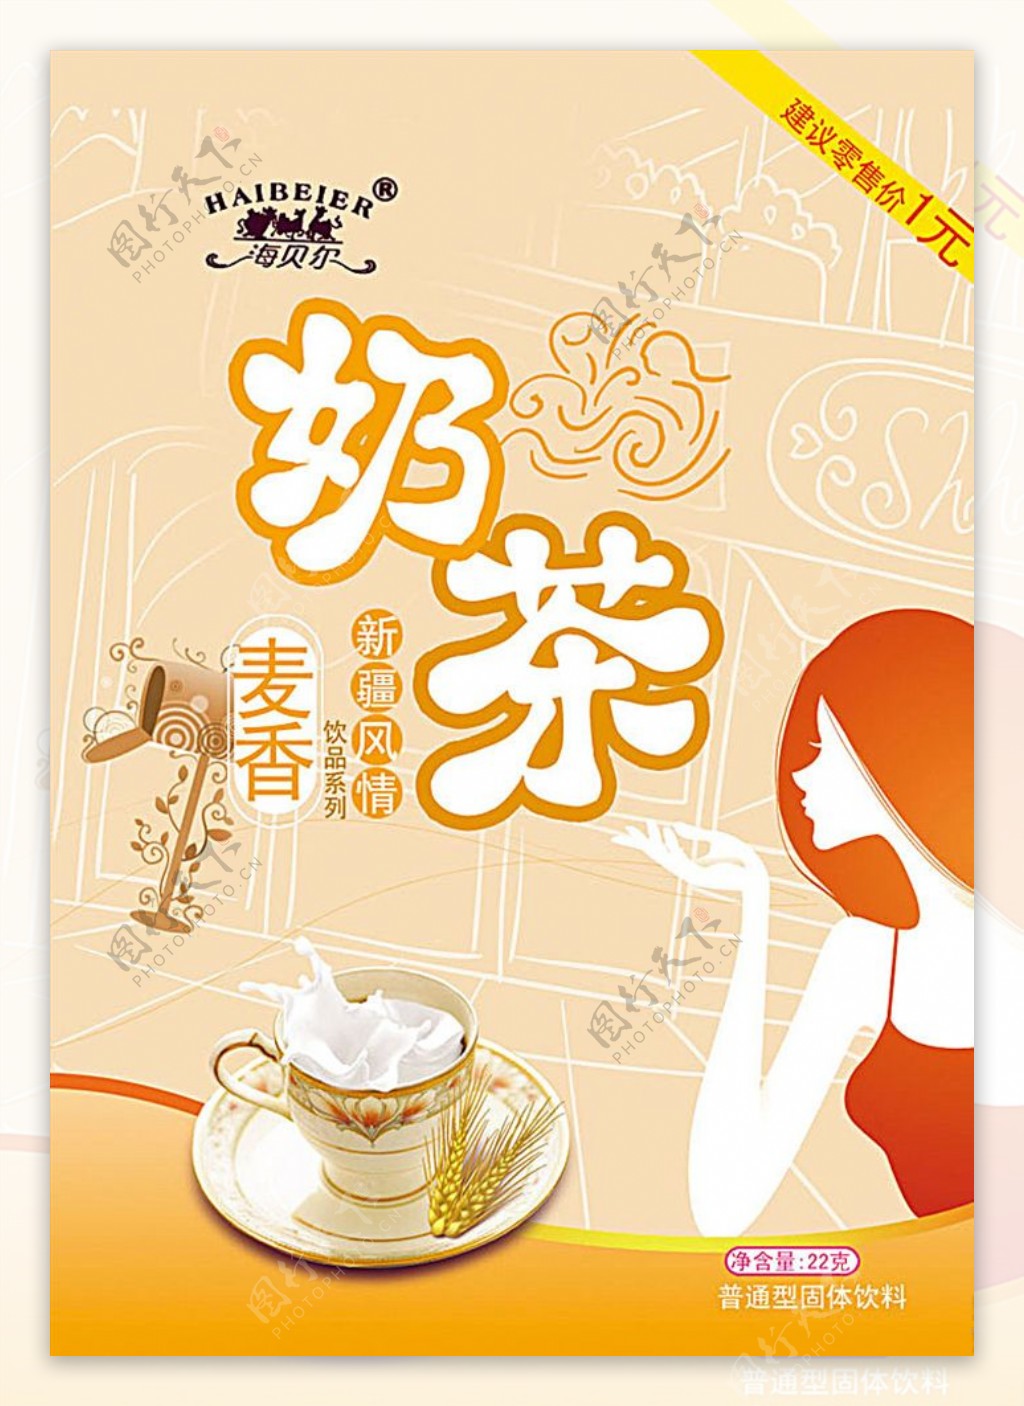 奶茶包装平面图